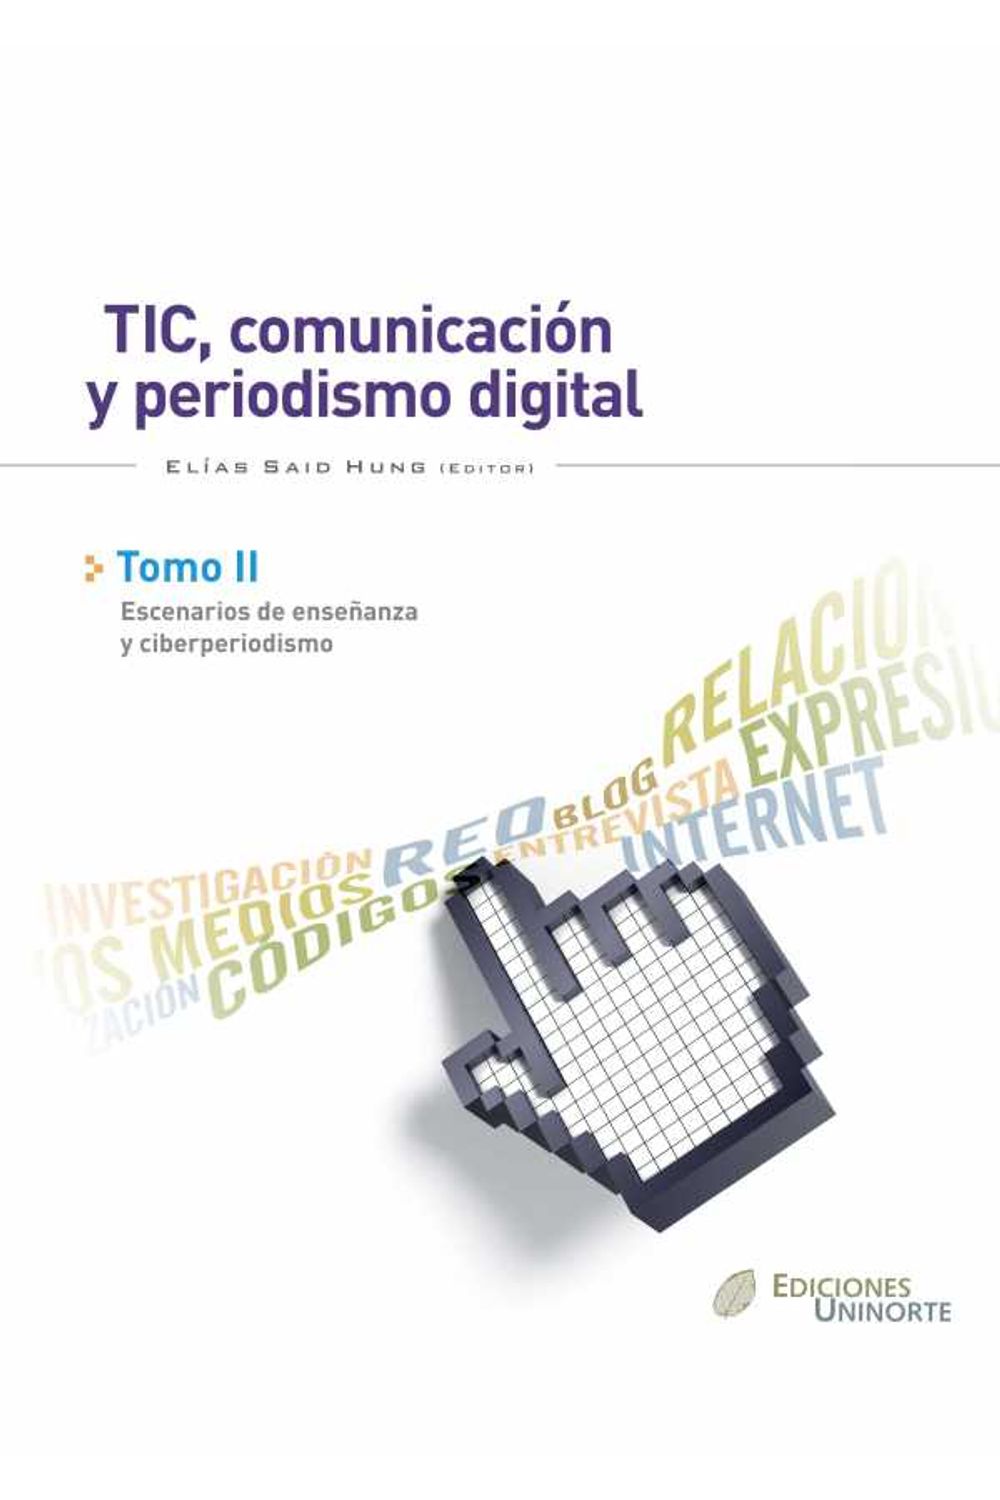 bw-tic-comunicacioacuten-y-periodismo-digital-tomo-ii-u-del-norte-editorial-9789587410785